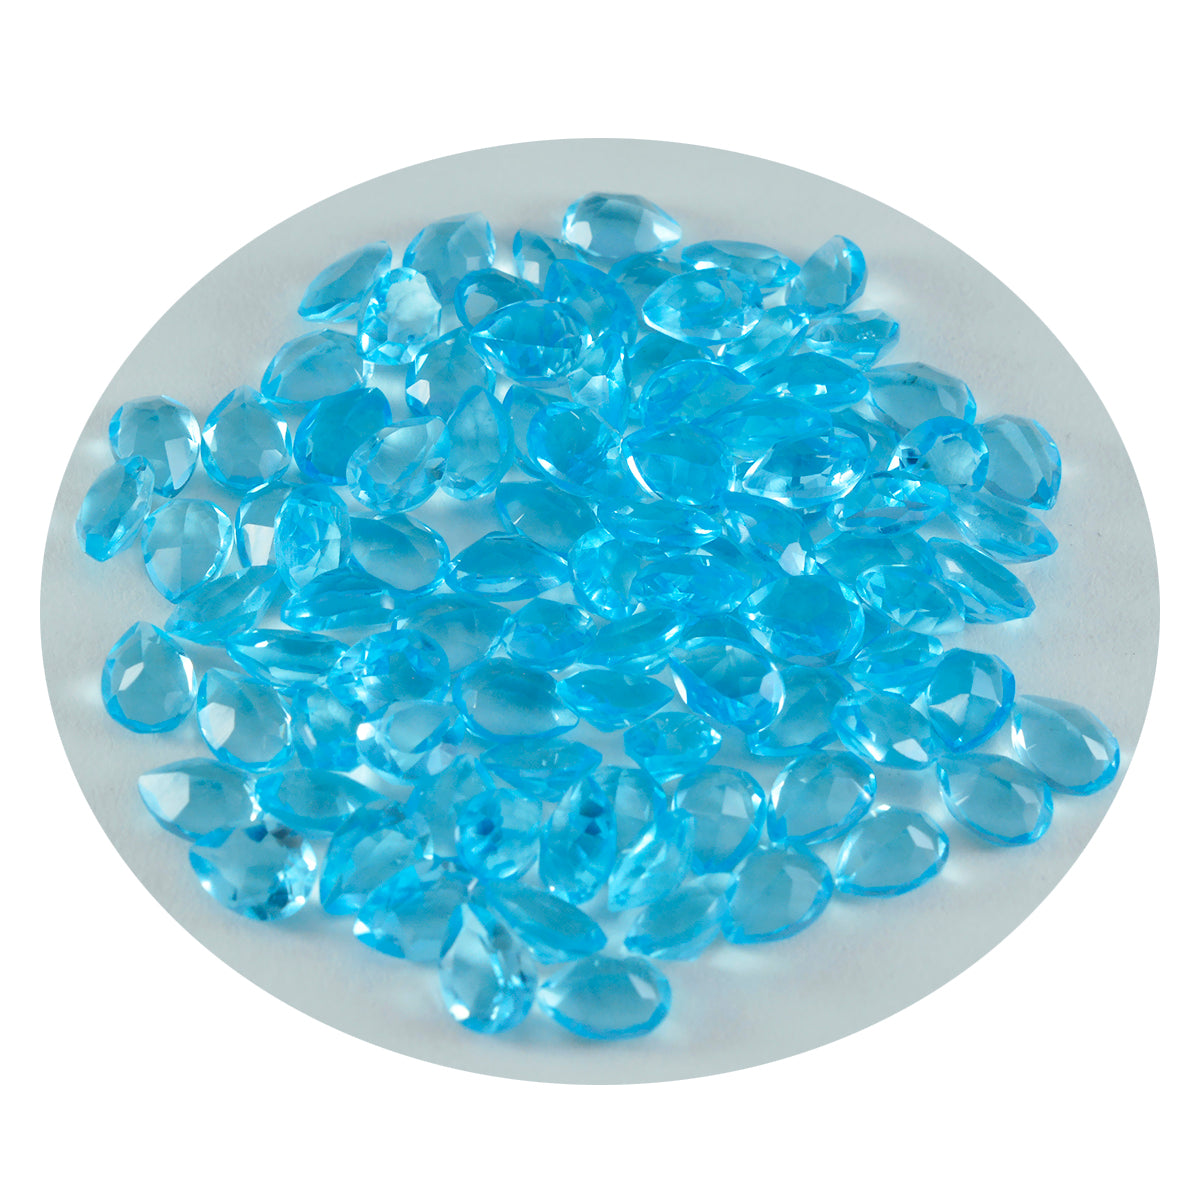 riyogems 1шт голубой топаз cz ограненный 3х5 мм драгоценные камни грушевидной формы отличного качества